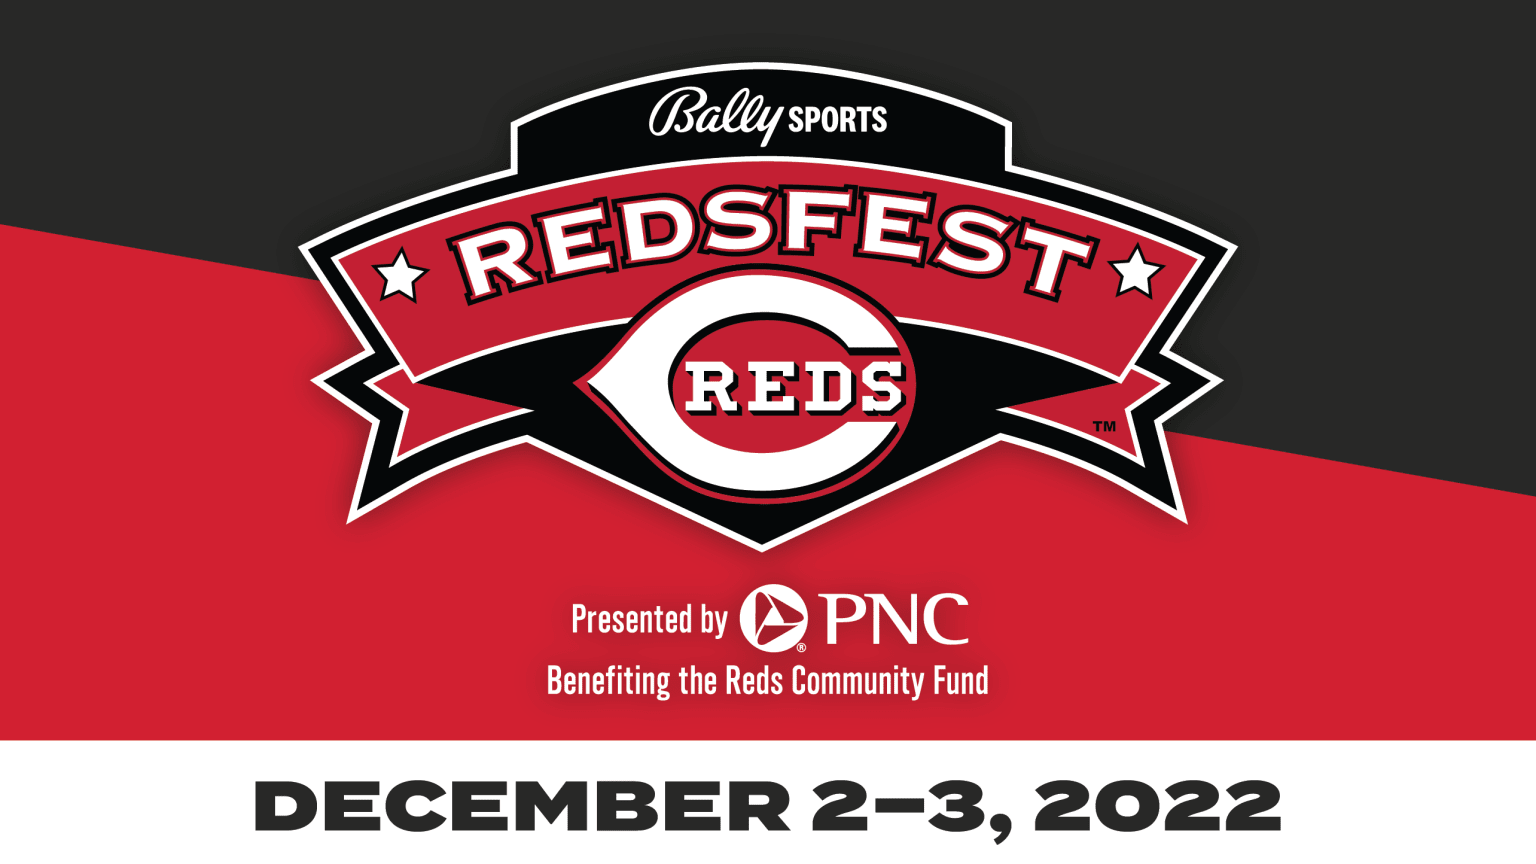 Redsfest Cincinnati Reds